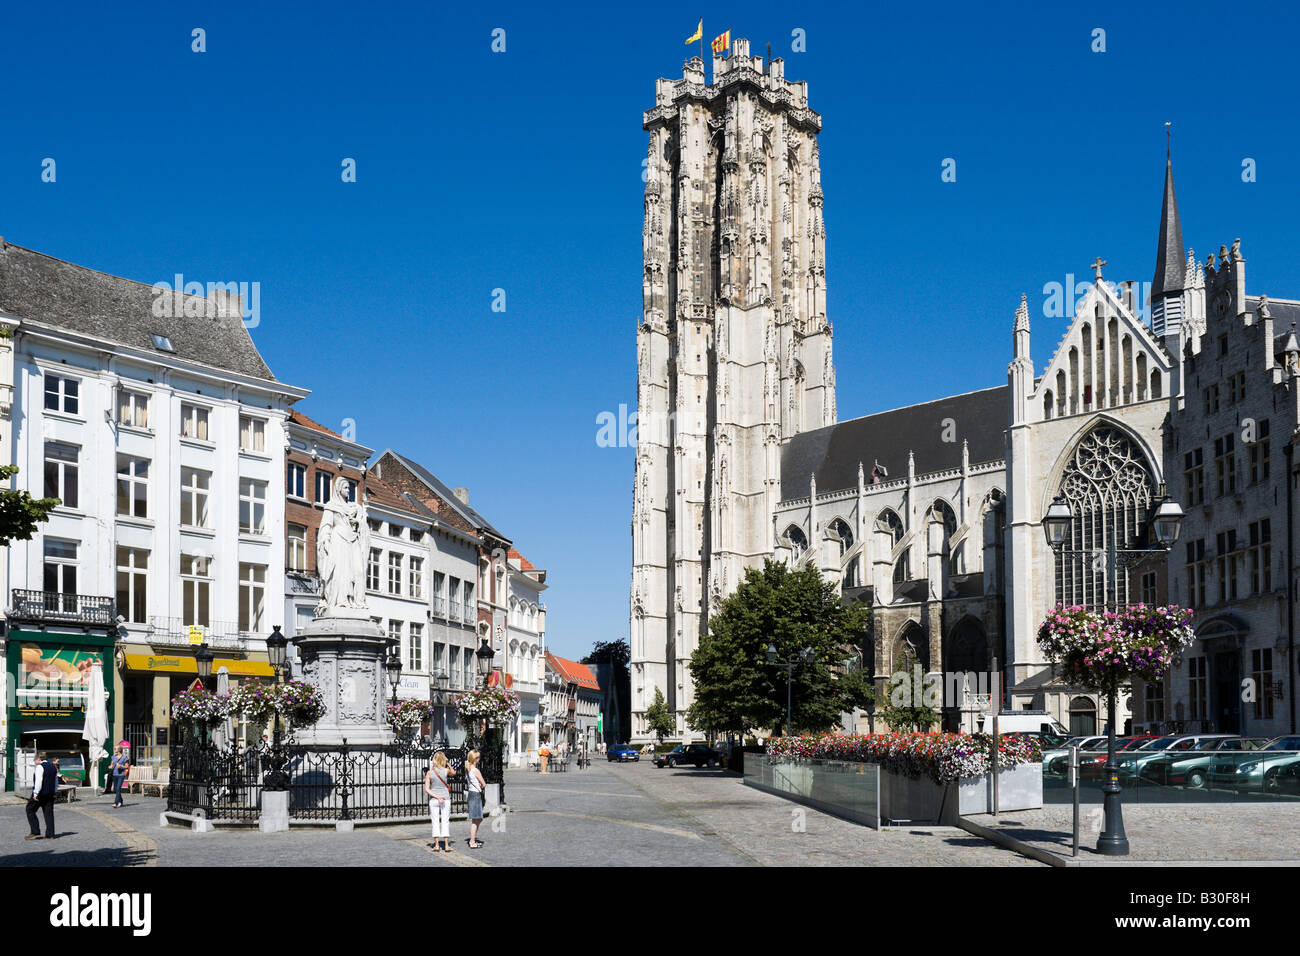 St Romboutskathedraal in der Grote Markt (Hauptplatz), Mechelen, Belgien Stockfoto